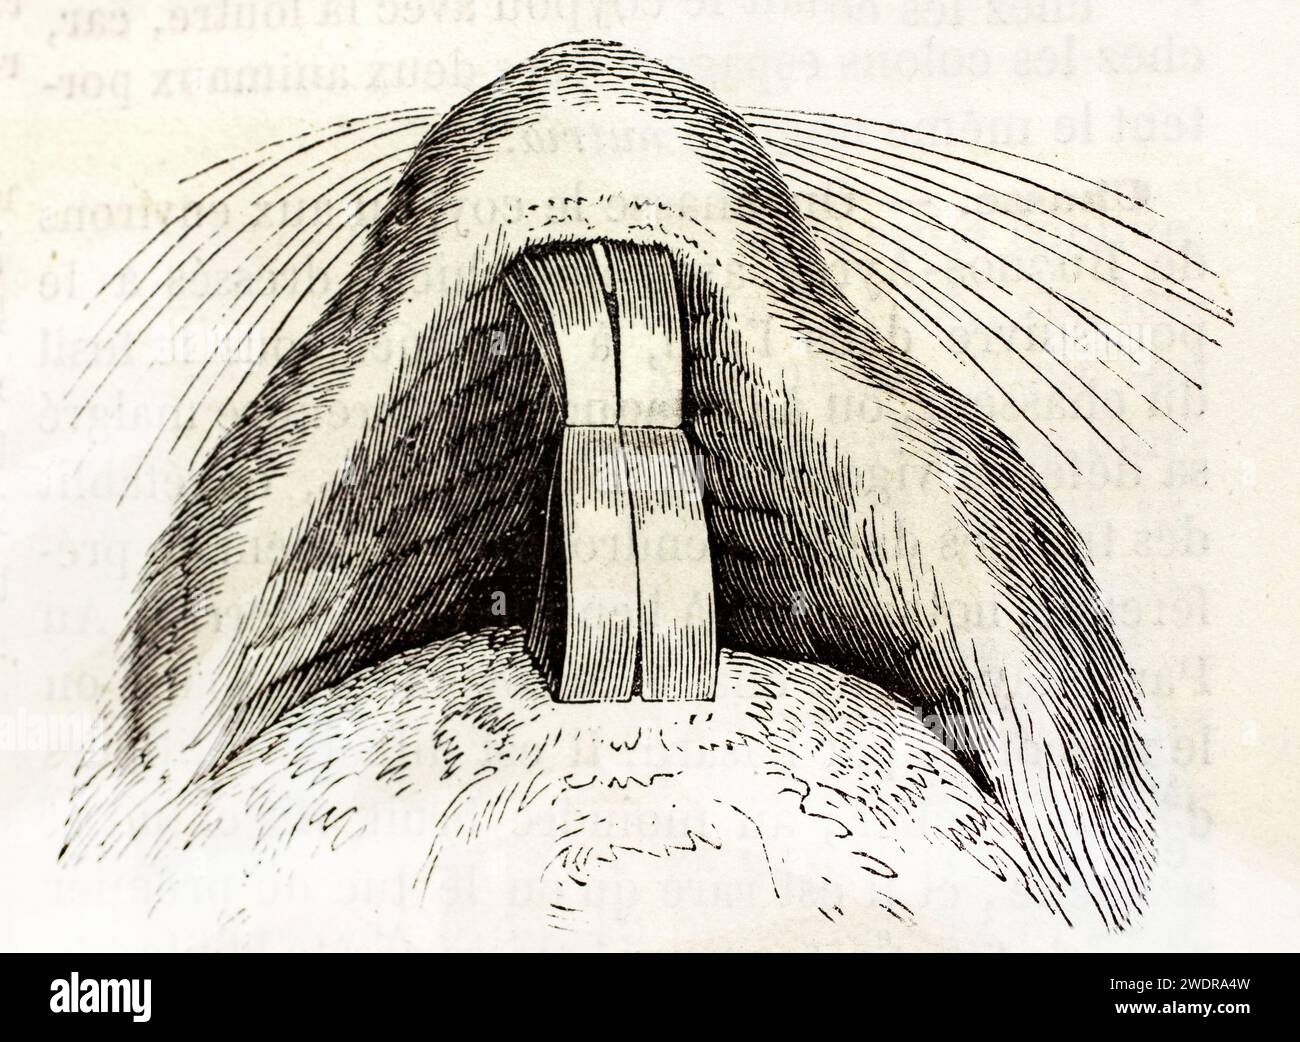 Vieille illustration gravée de dents nutria. Par unknown aurhor, publié sur Brehm, les Mammifères, Baillière et fils, Paris, 1878 Banque D'Images